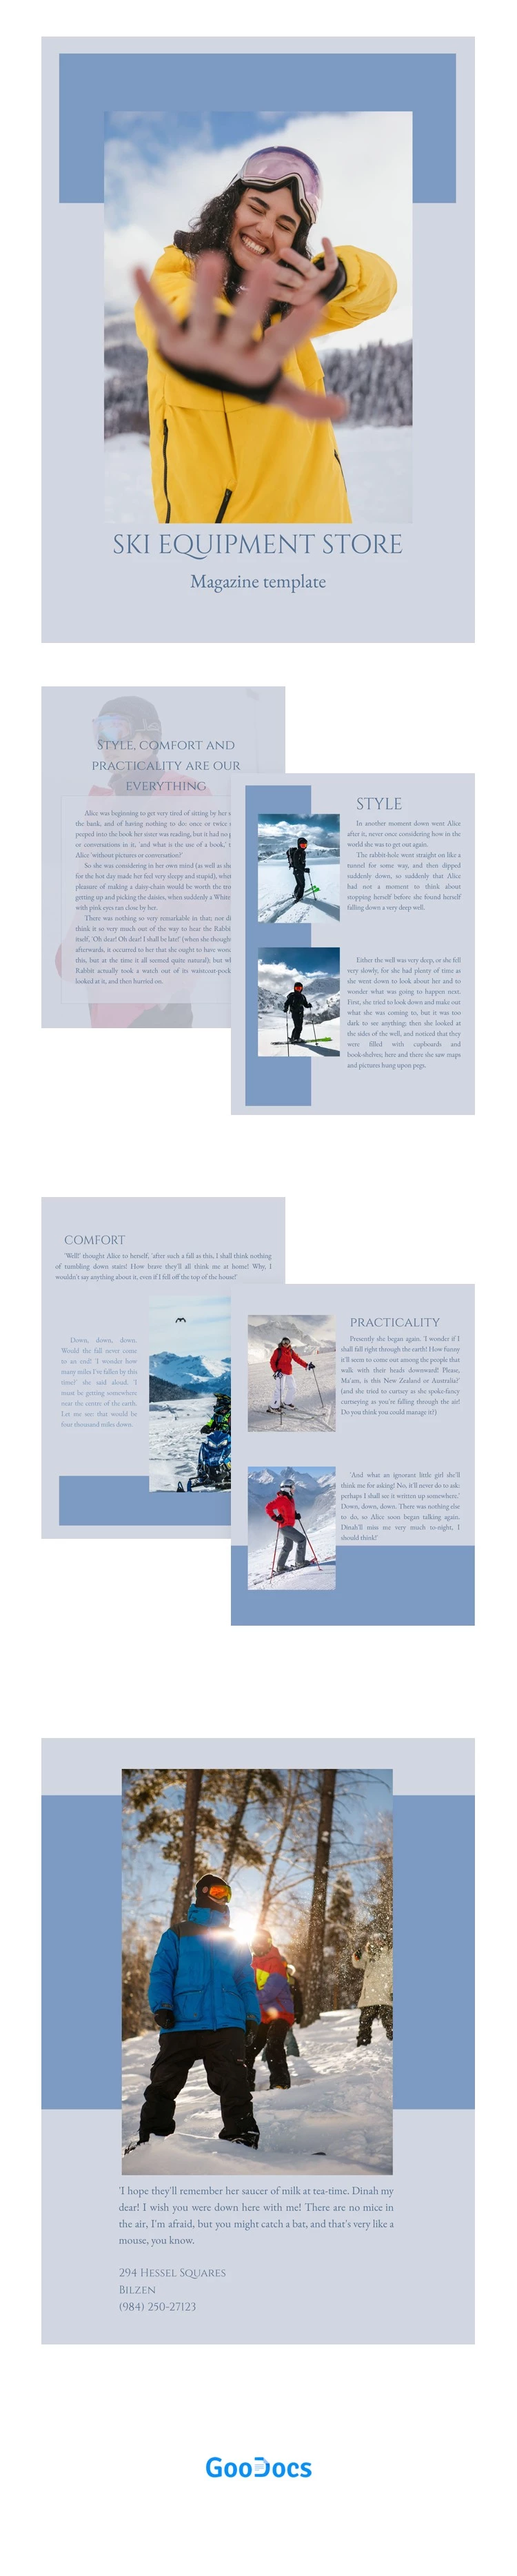 滑雪装备店杂志 - free Google Docs Template - 10061948